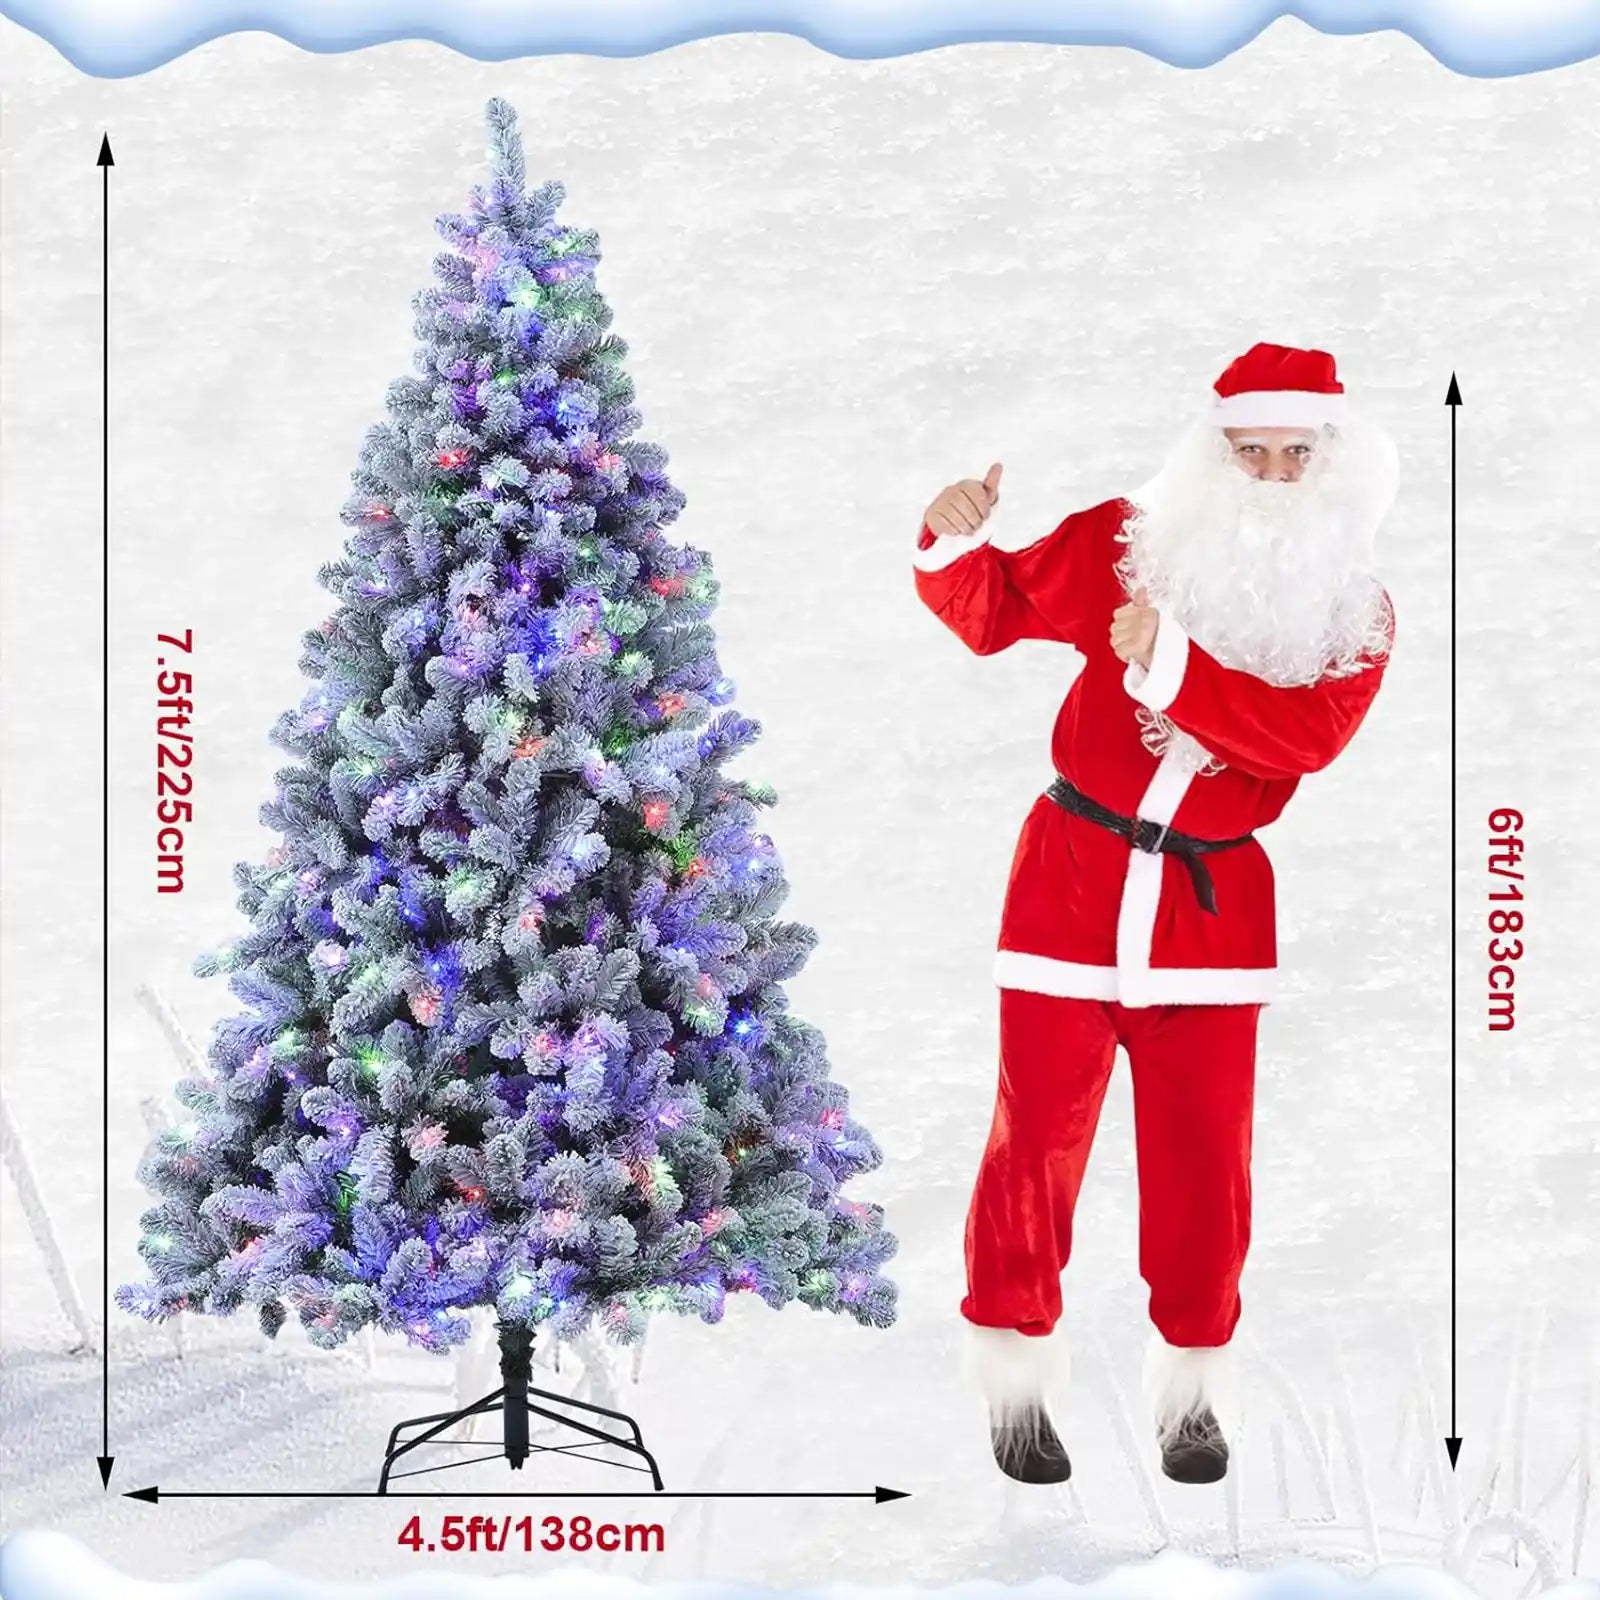 Árbol de Navidad de 7.5 pies con 10 funciones de luces blancas y coloridas, árbol de Navidad flocado de fácil montaje con ramas realistas, árboles de Navidad preiluminados con base de metal resistente, puntas de PVC 